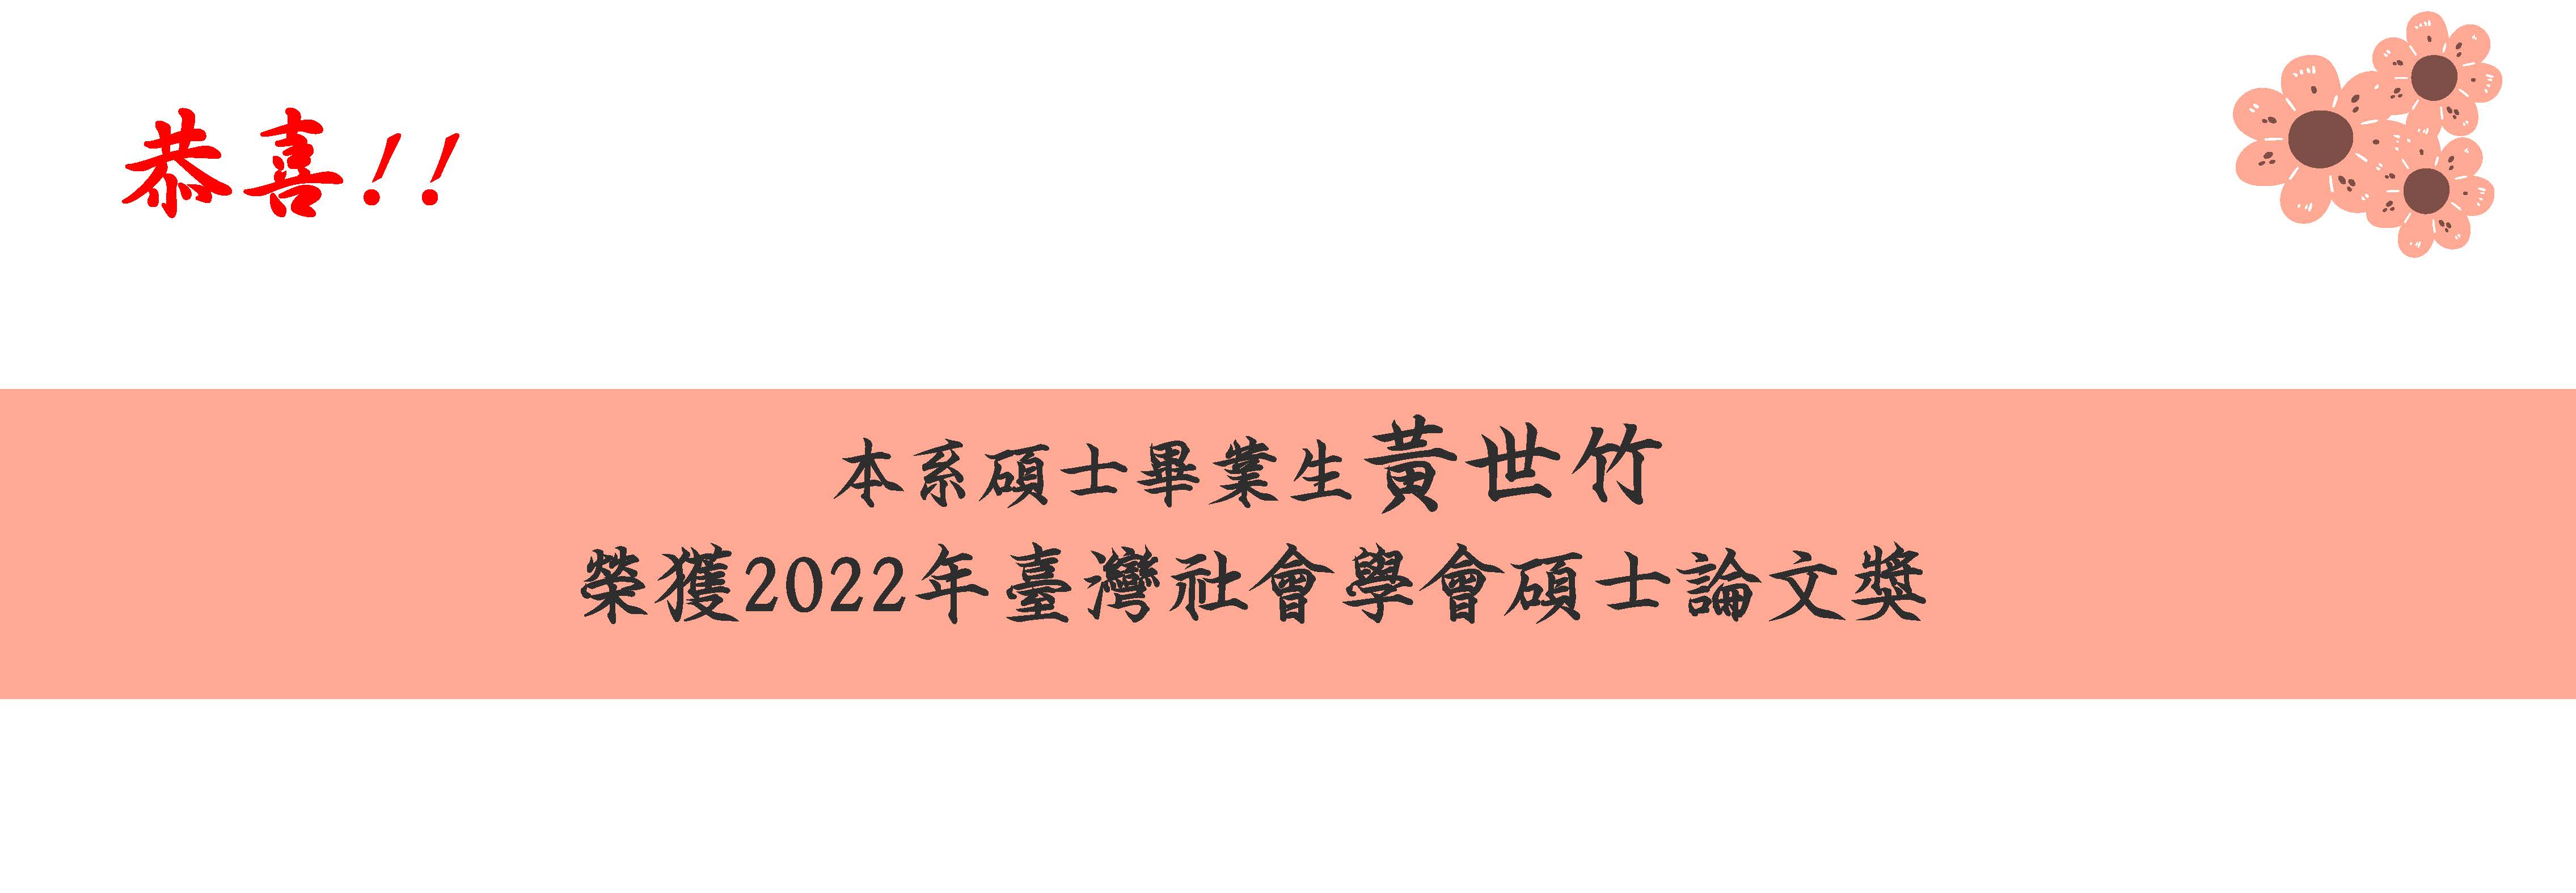 2022年台灣社會學會碩士論文獎_黃世竹_橫版